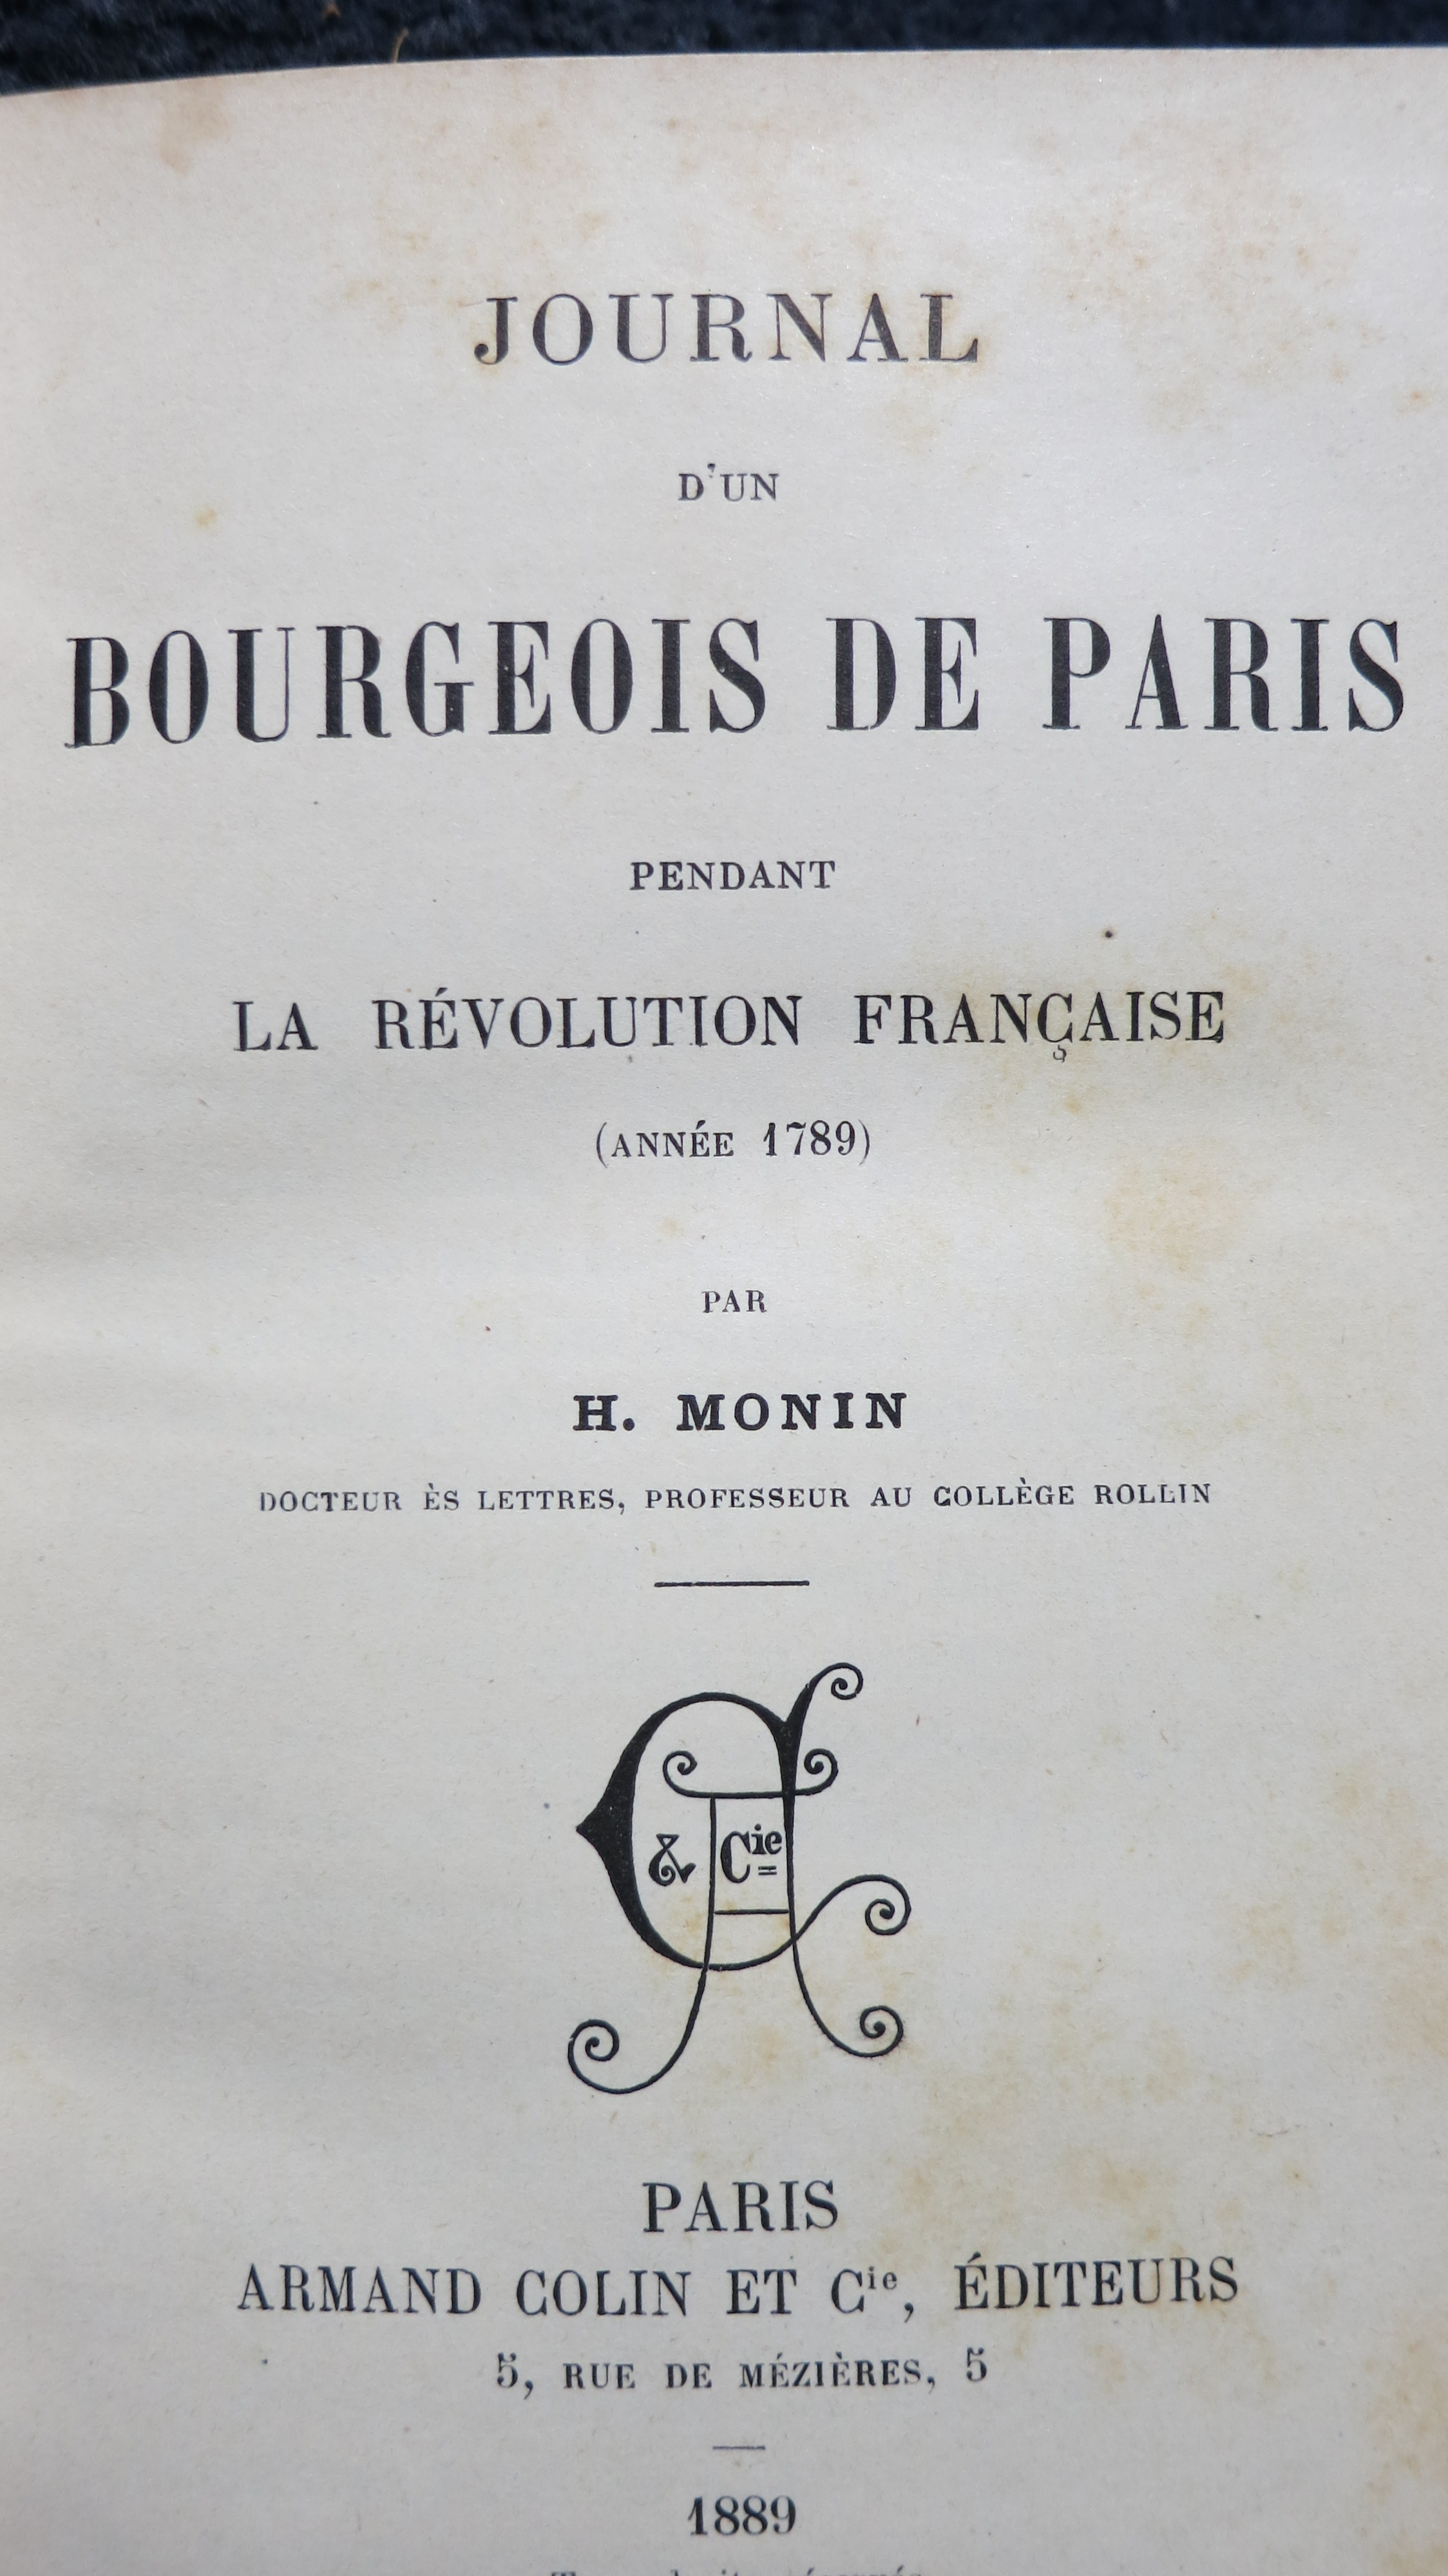 Journal d'un bourgeois de Paris pendant la Révolution française